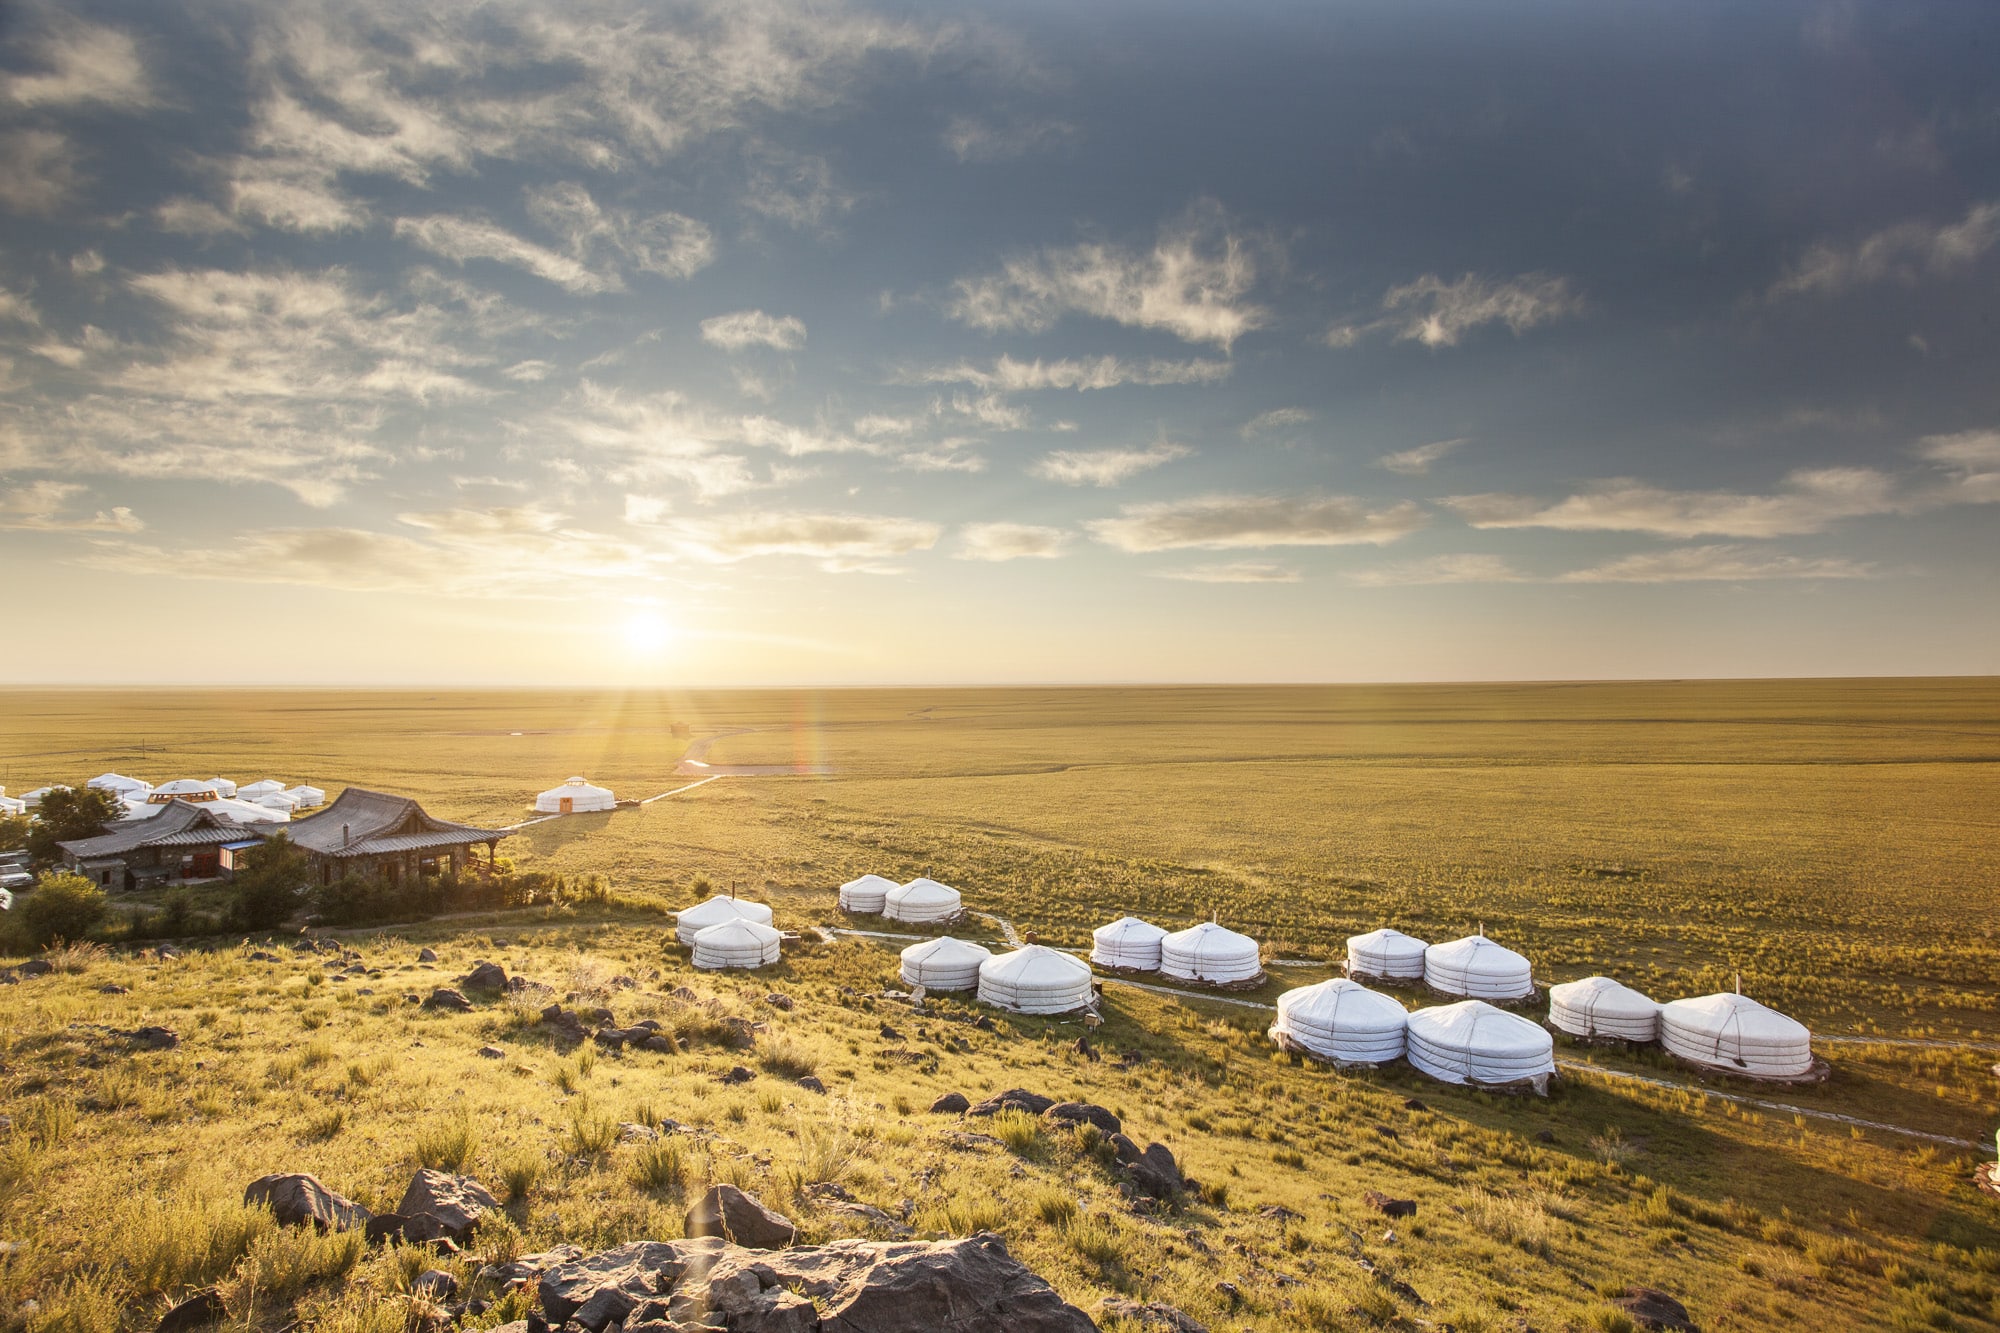 Lire la suite à propos de l’article Expédition nomade en Mongolie